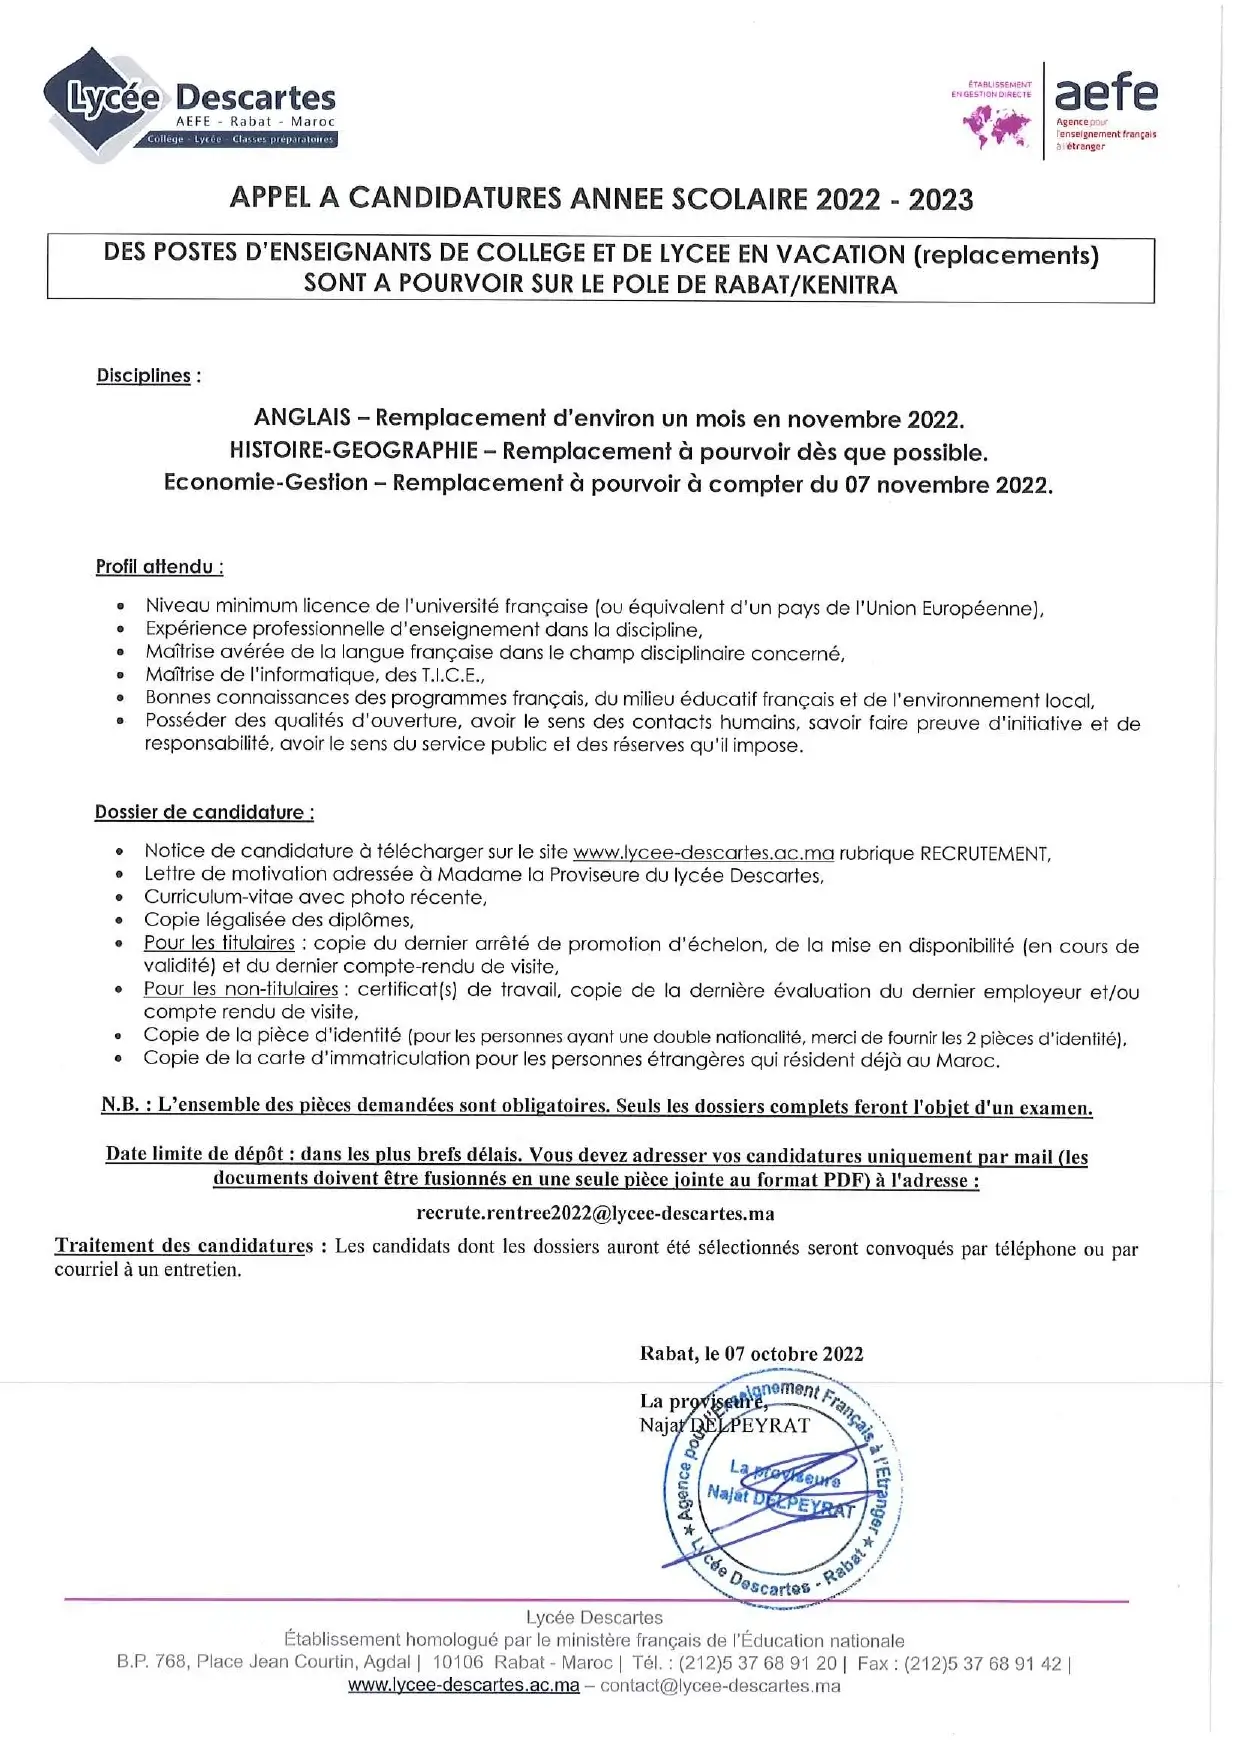 Lycée Descartes Maroc recrute des Enseignants